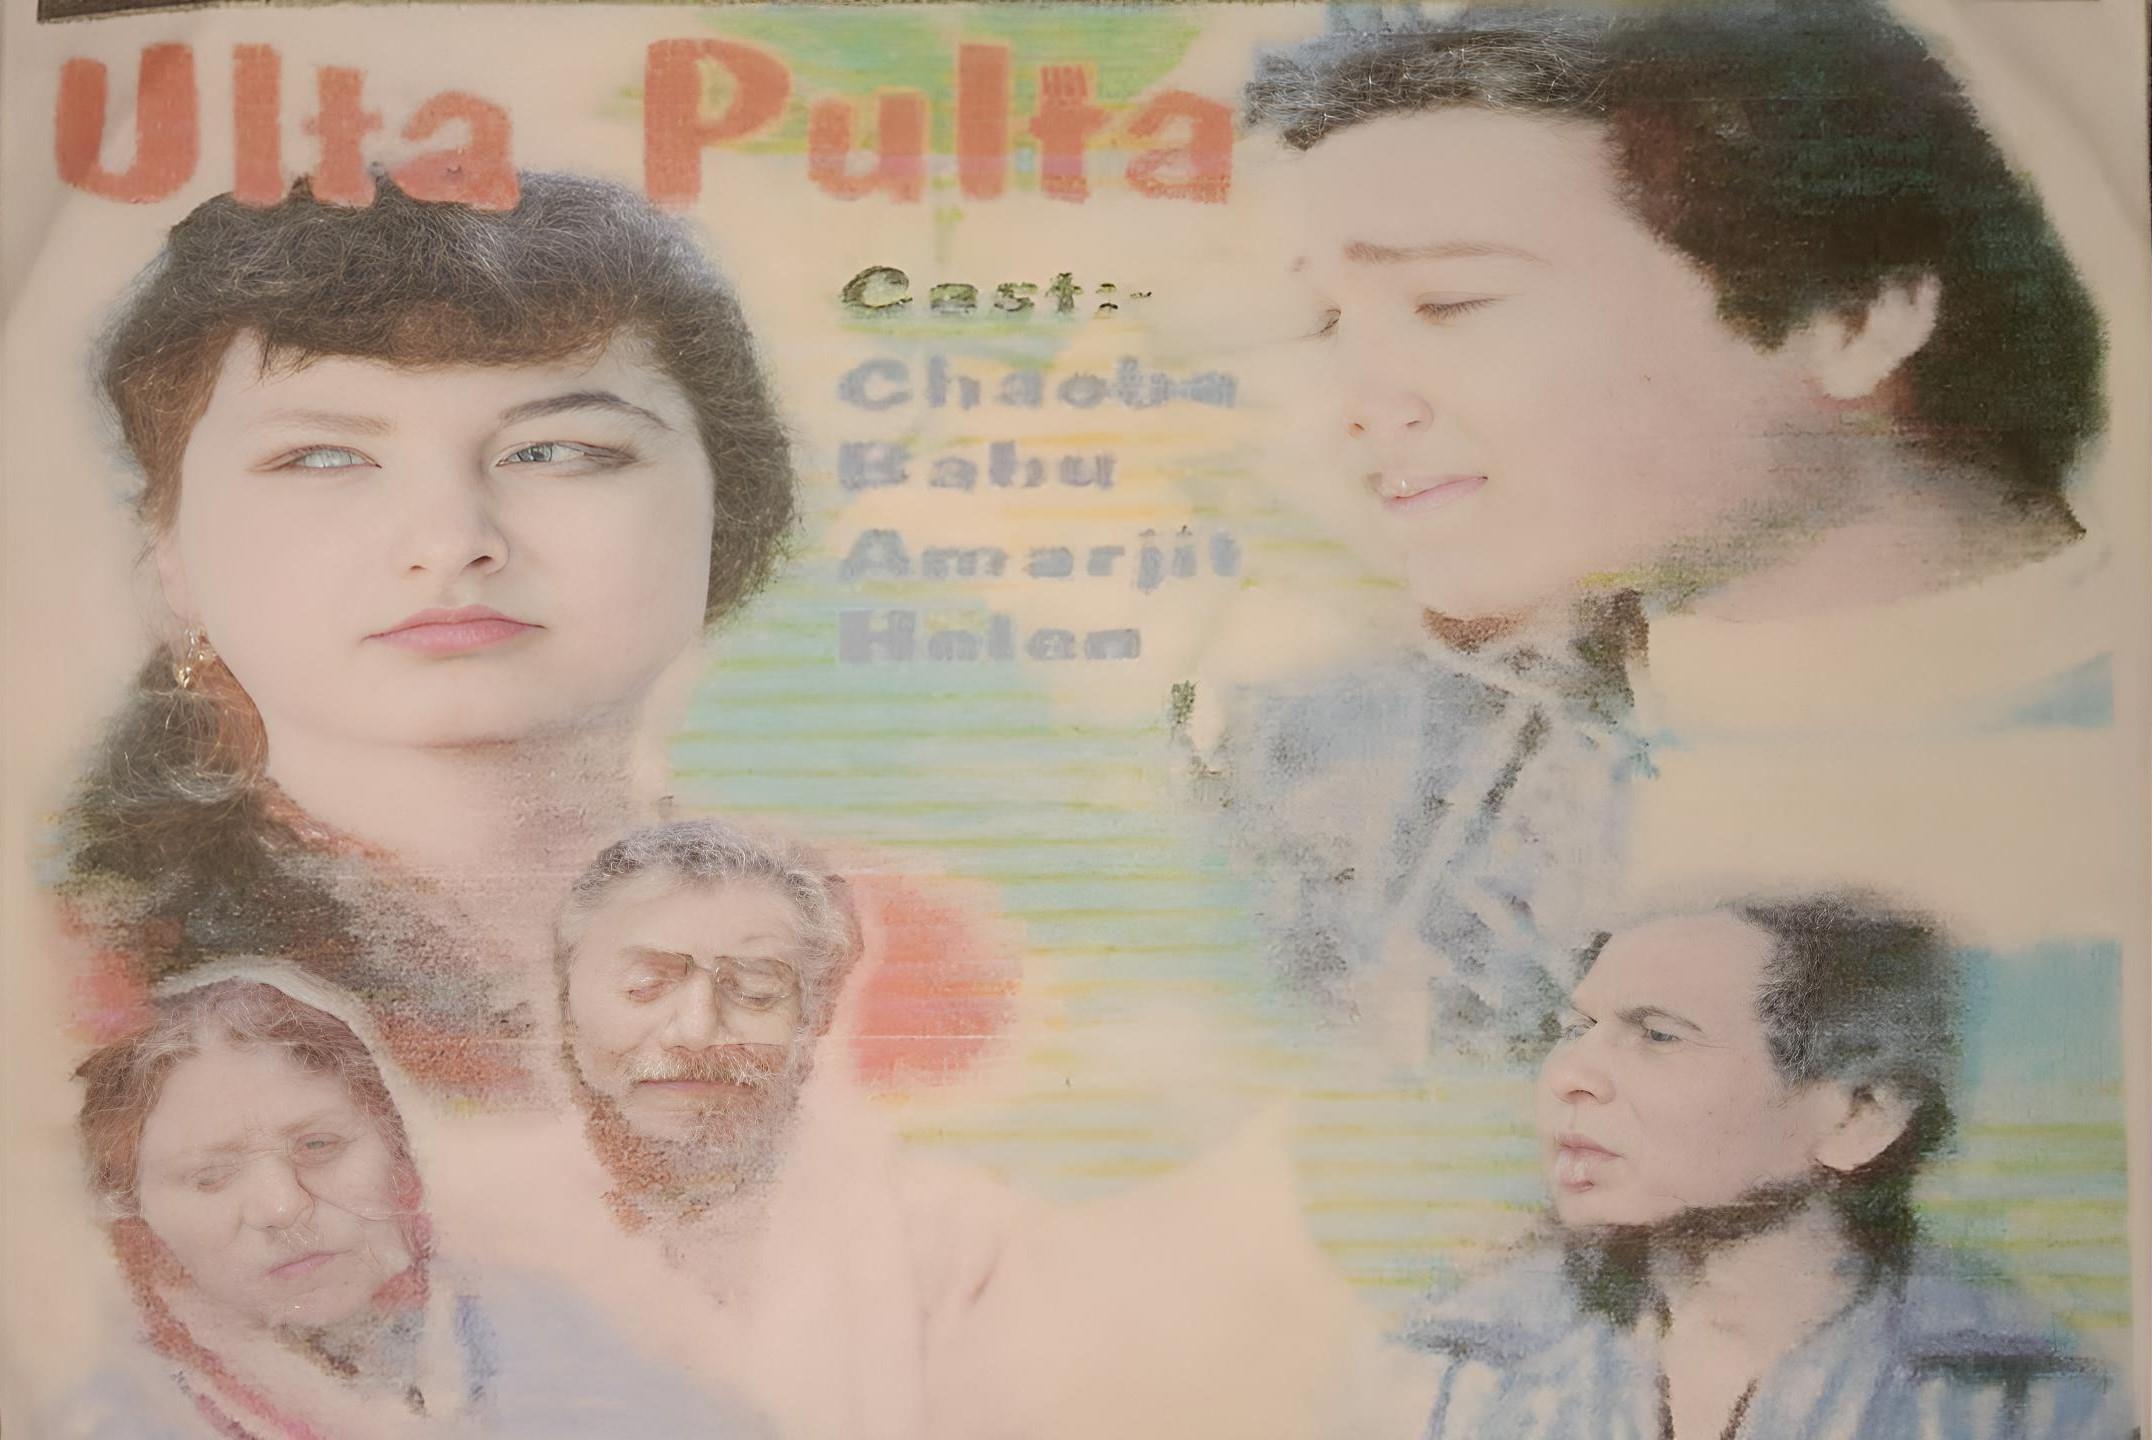 Ulta Pulta (1997)